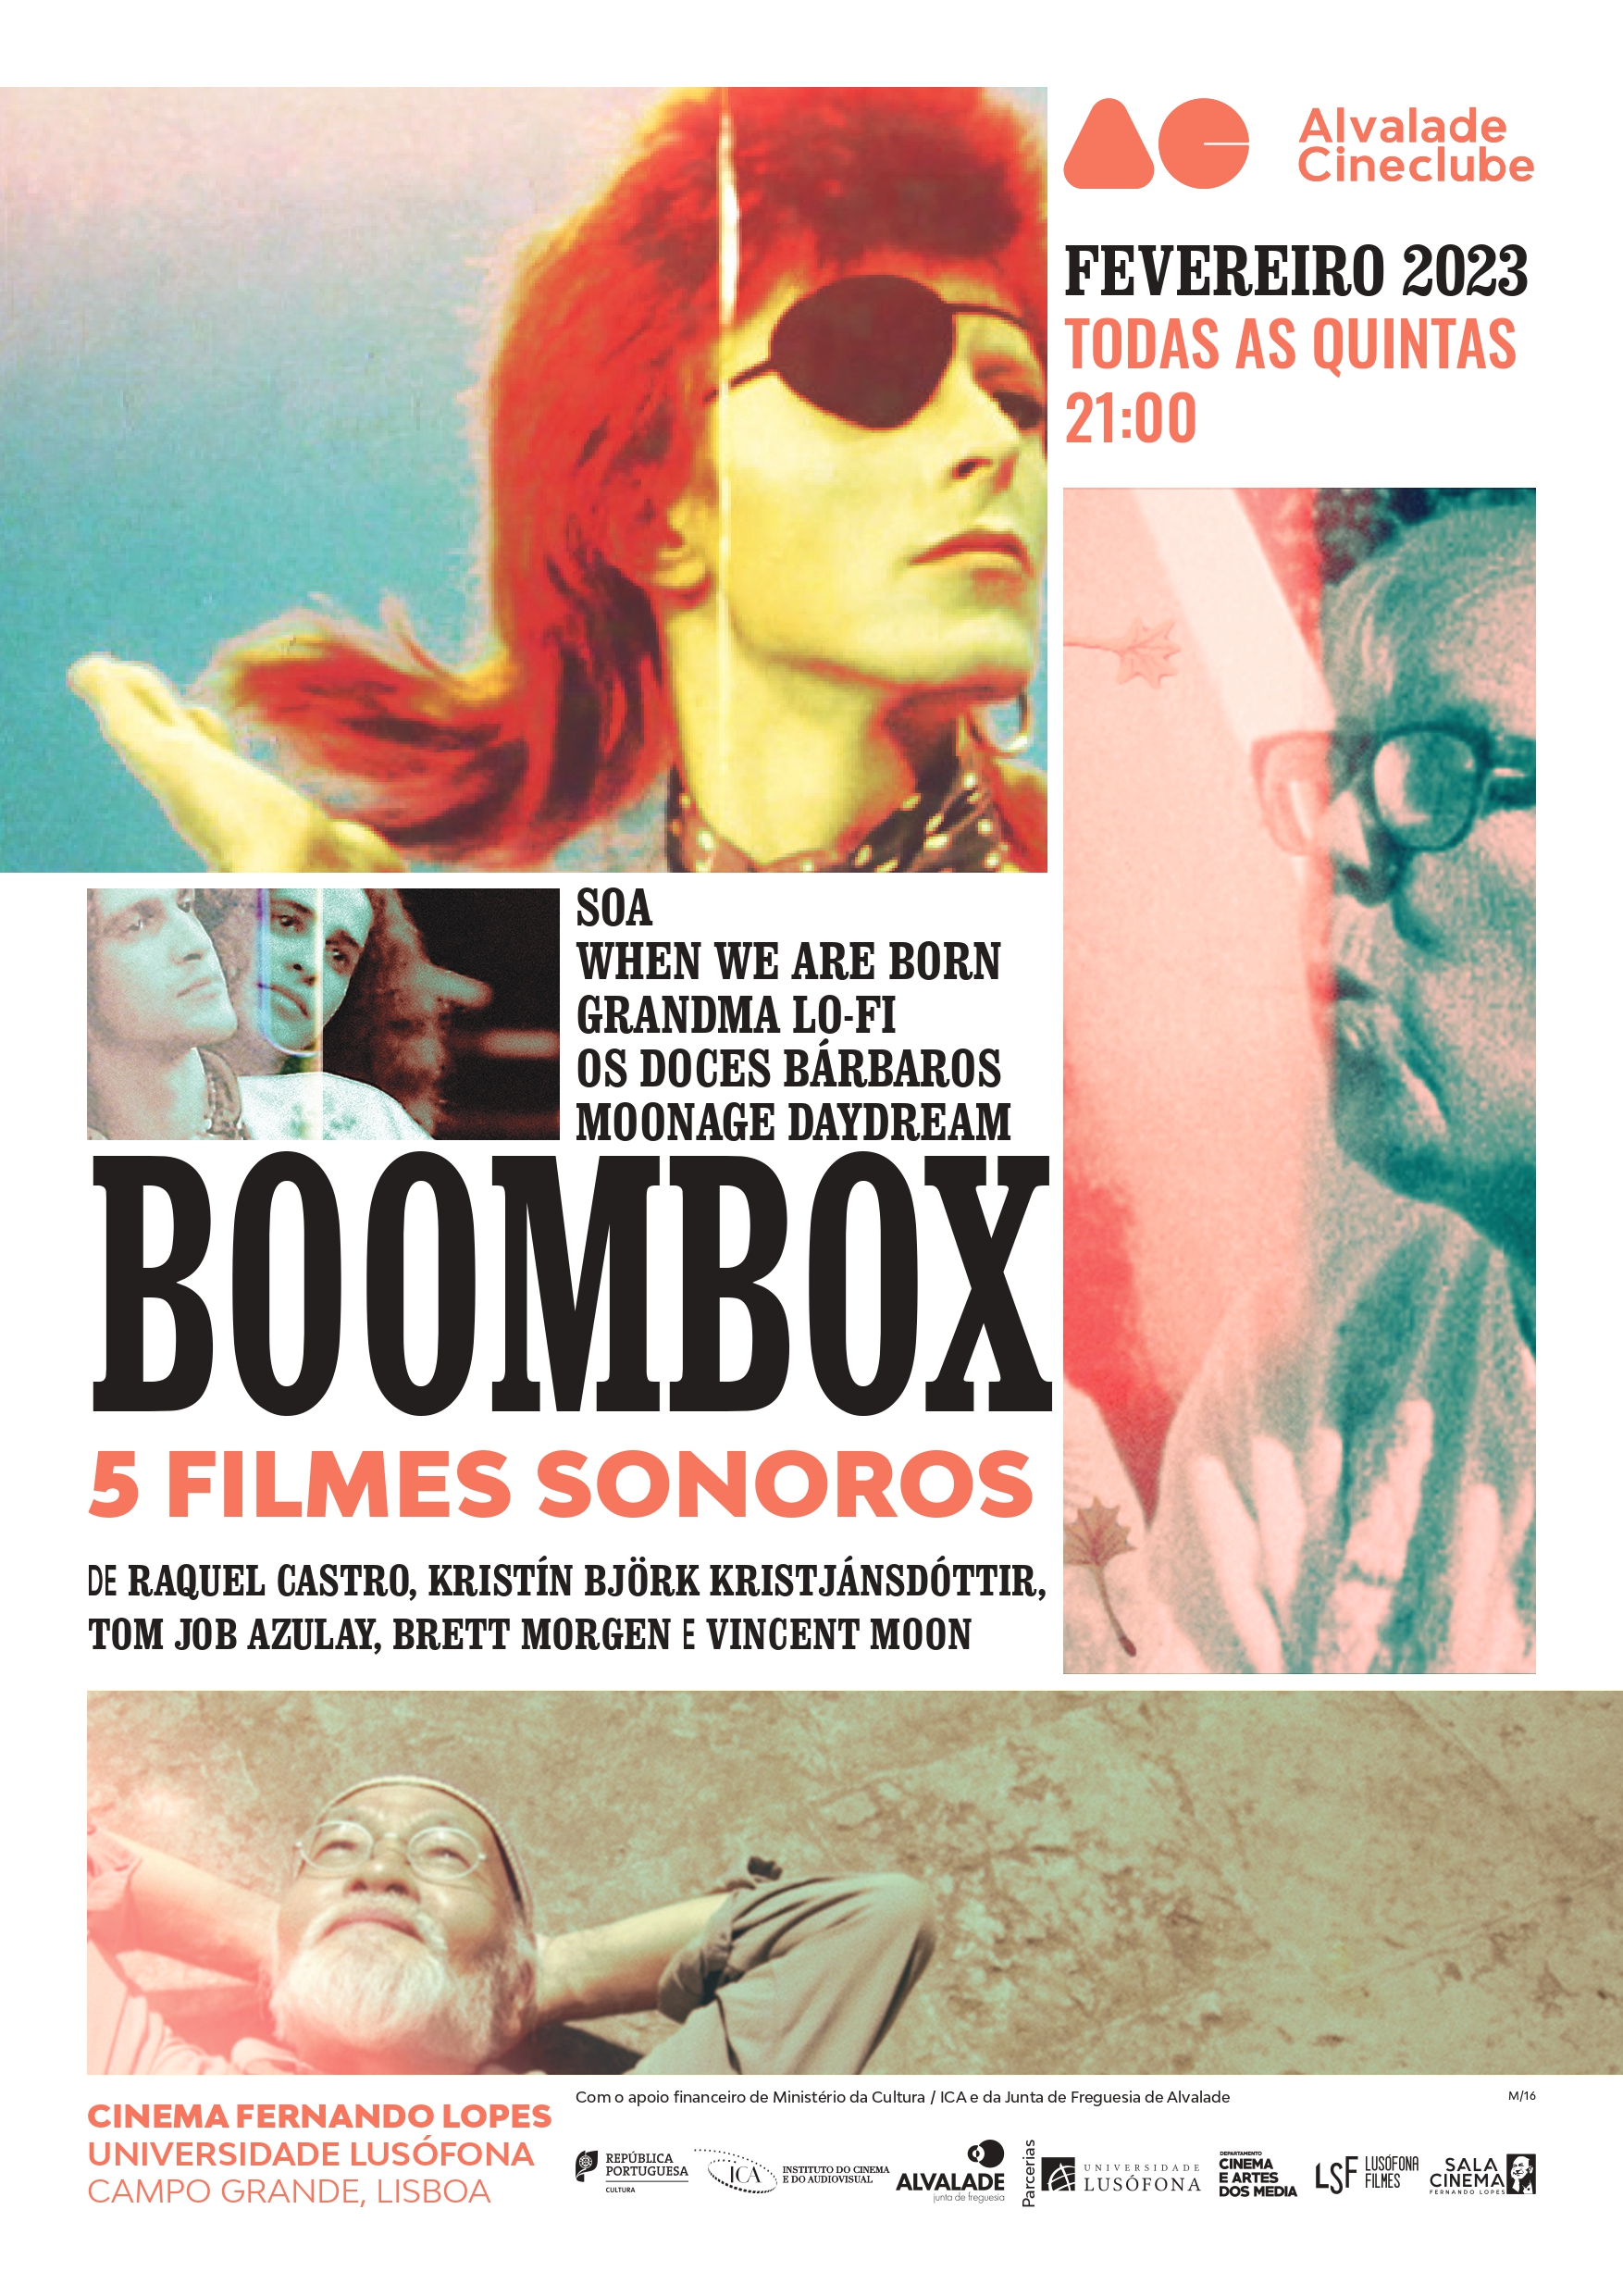 Boombox - 5 filmes sonoros